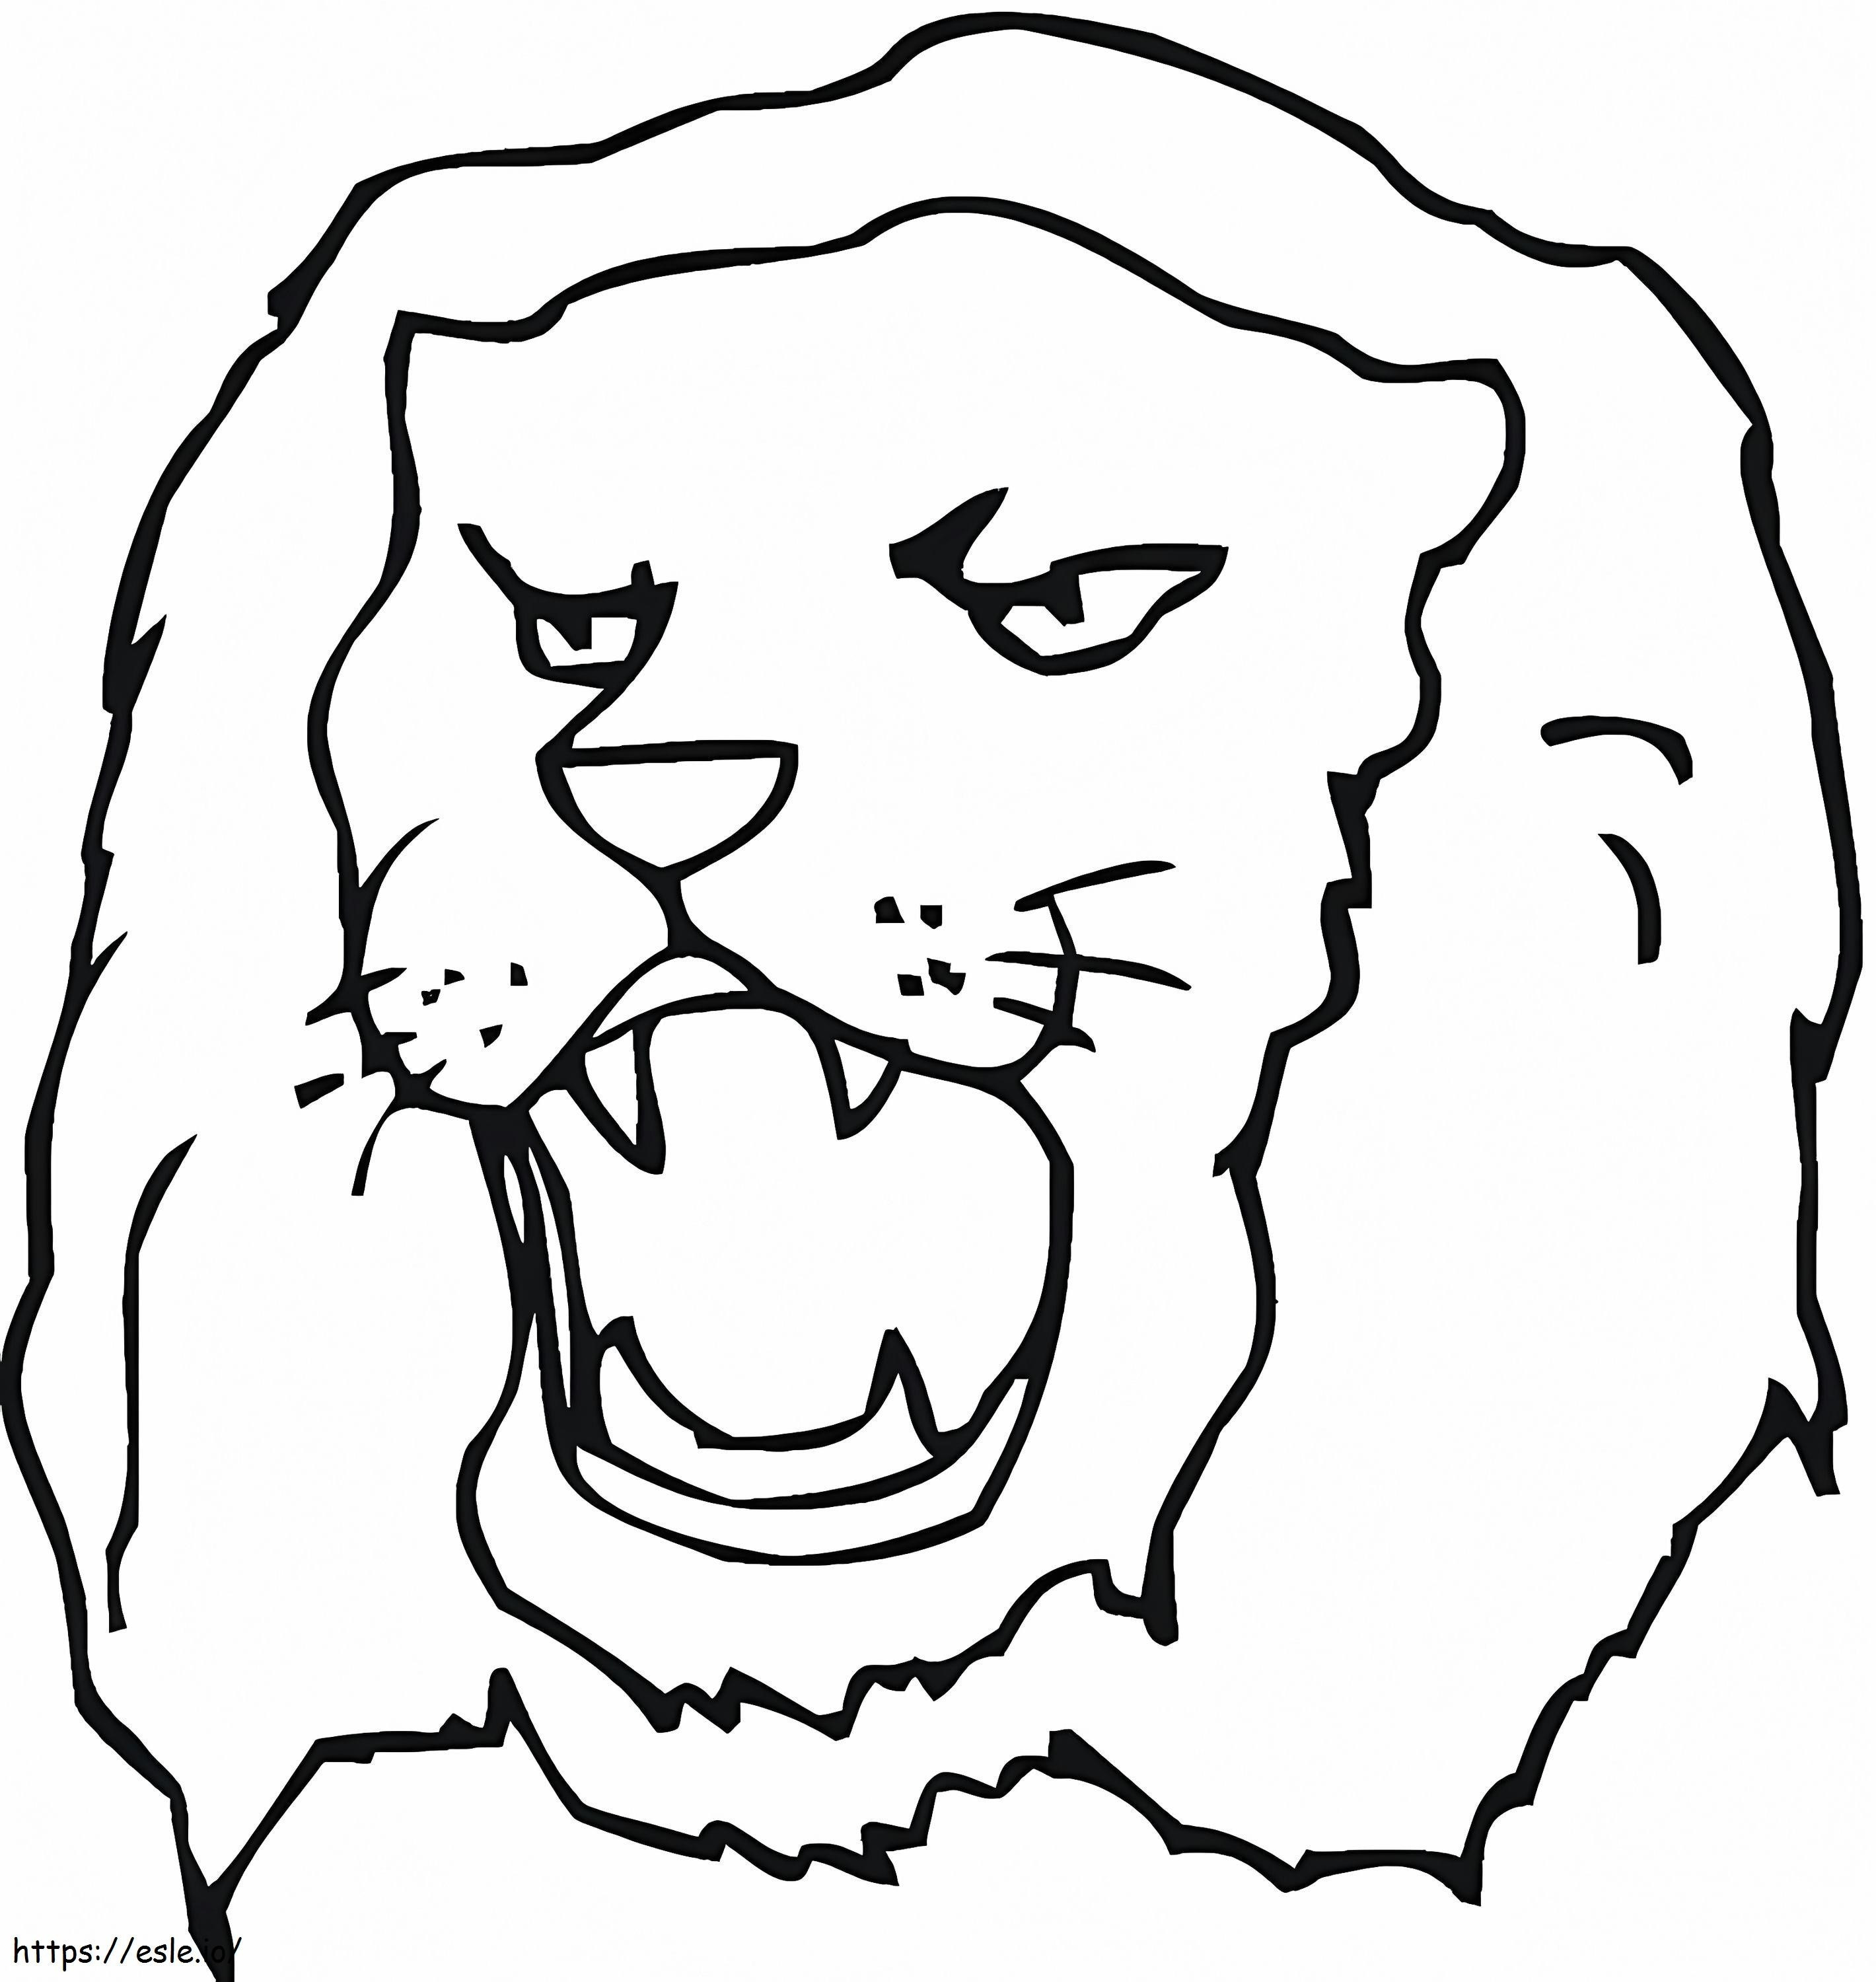 Löwengesicht ausmalbilder